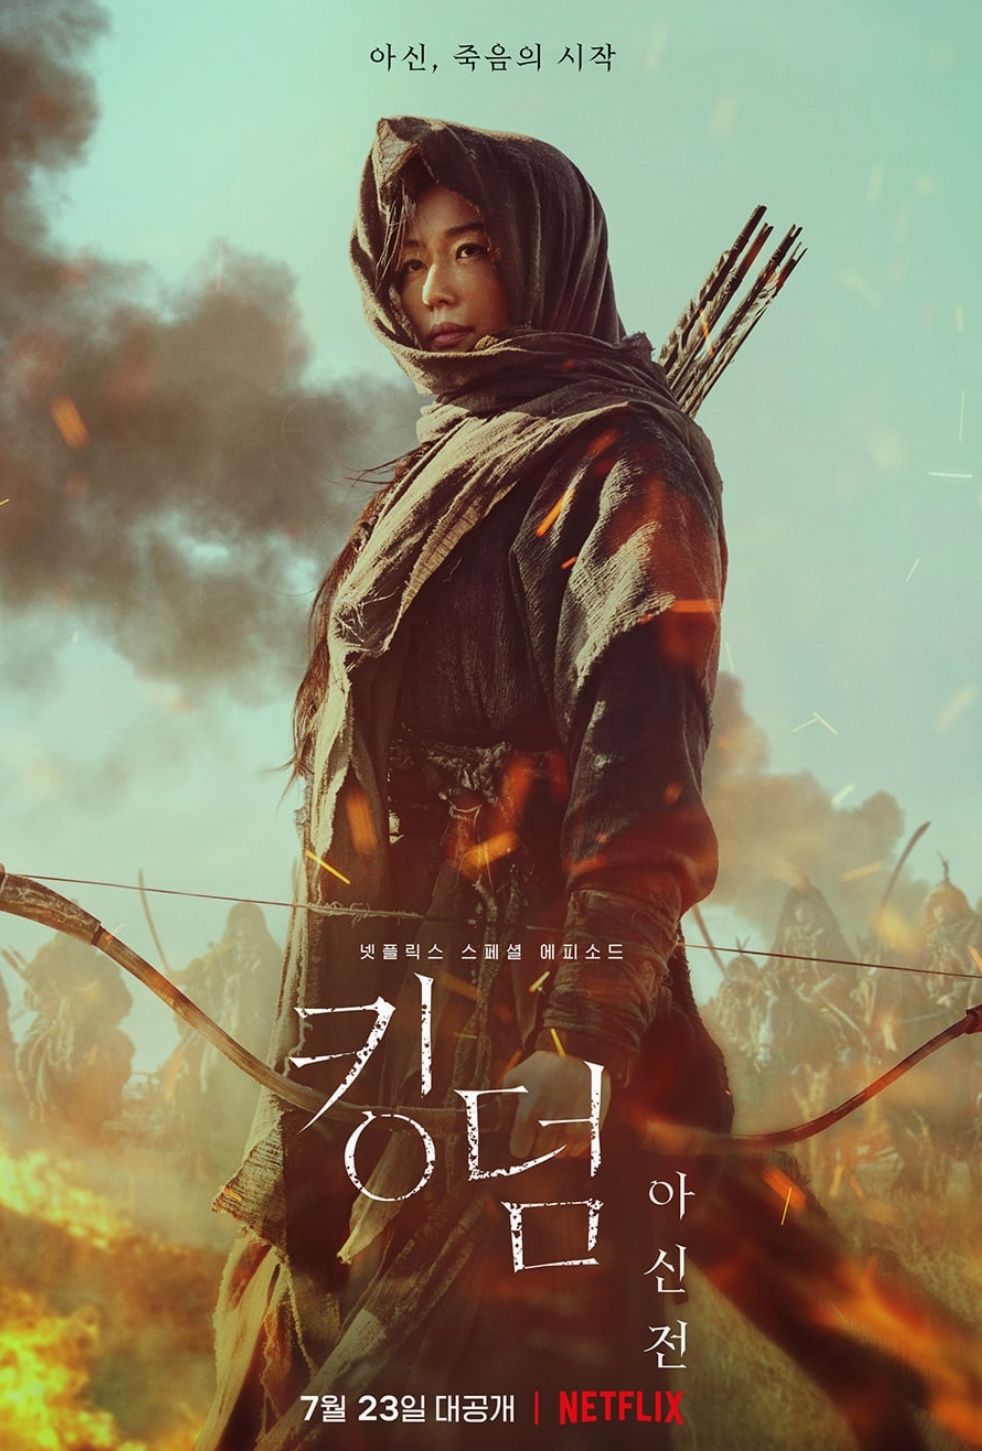 Poster terbaru film Kingdom: Ashin of the North, yang merupakan episode spesial dari film Kingdom, akan tayang perdana pada 23 Juli 2021 di Netflix.